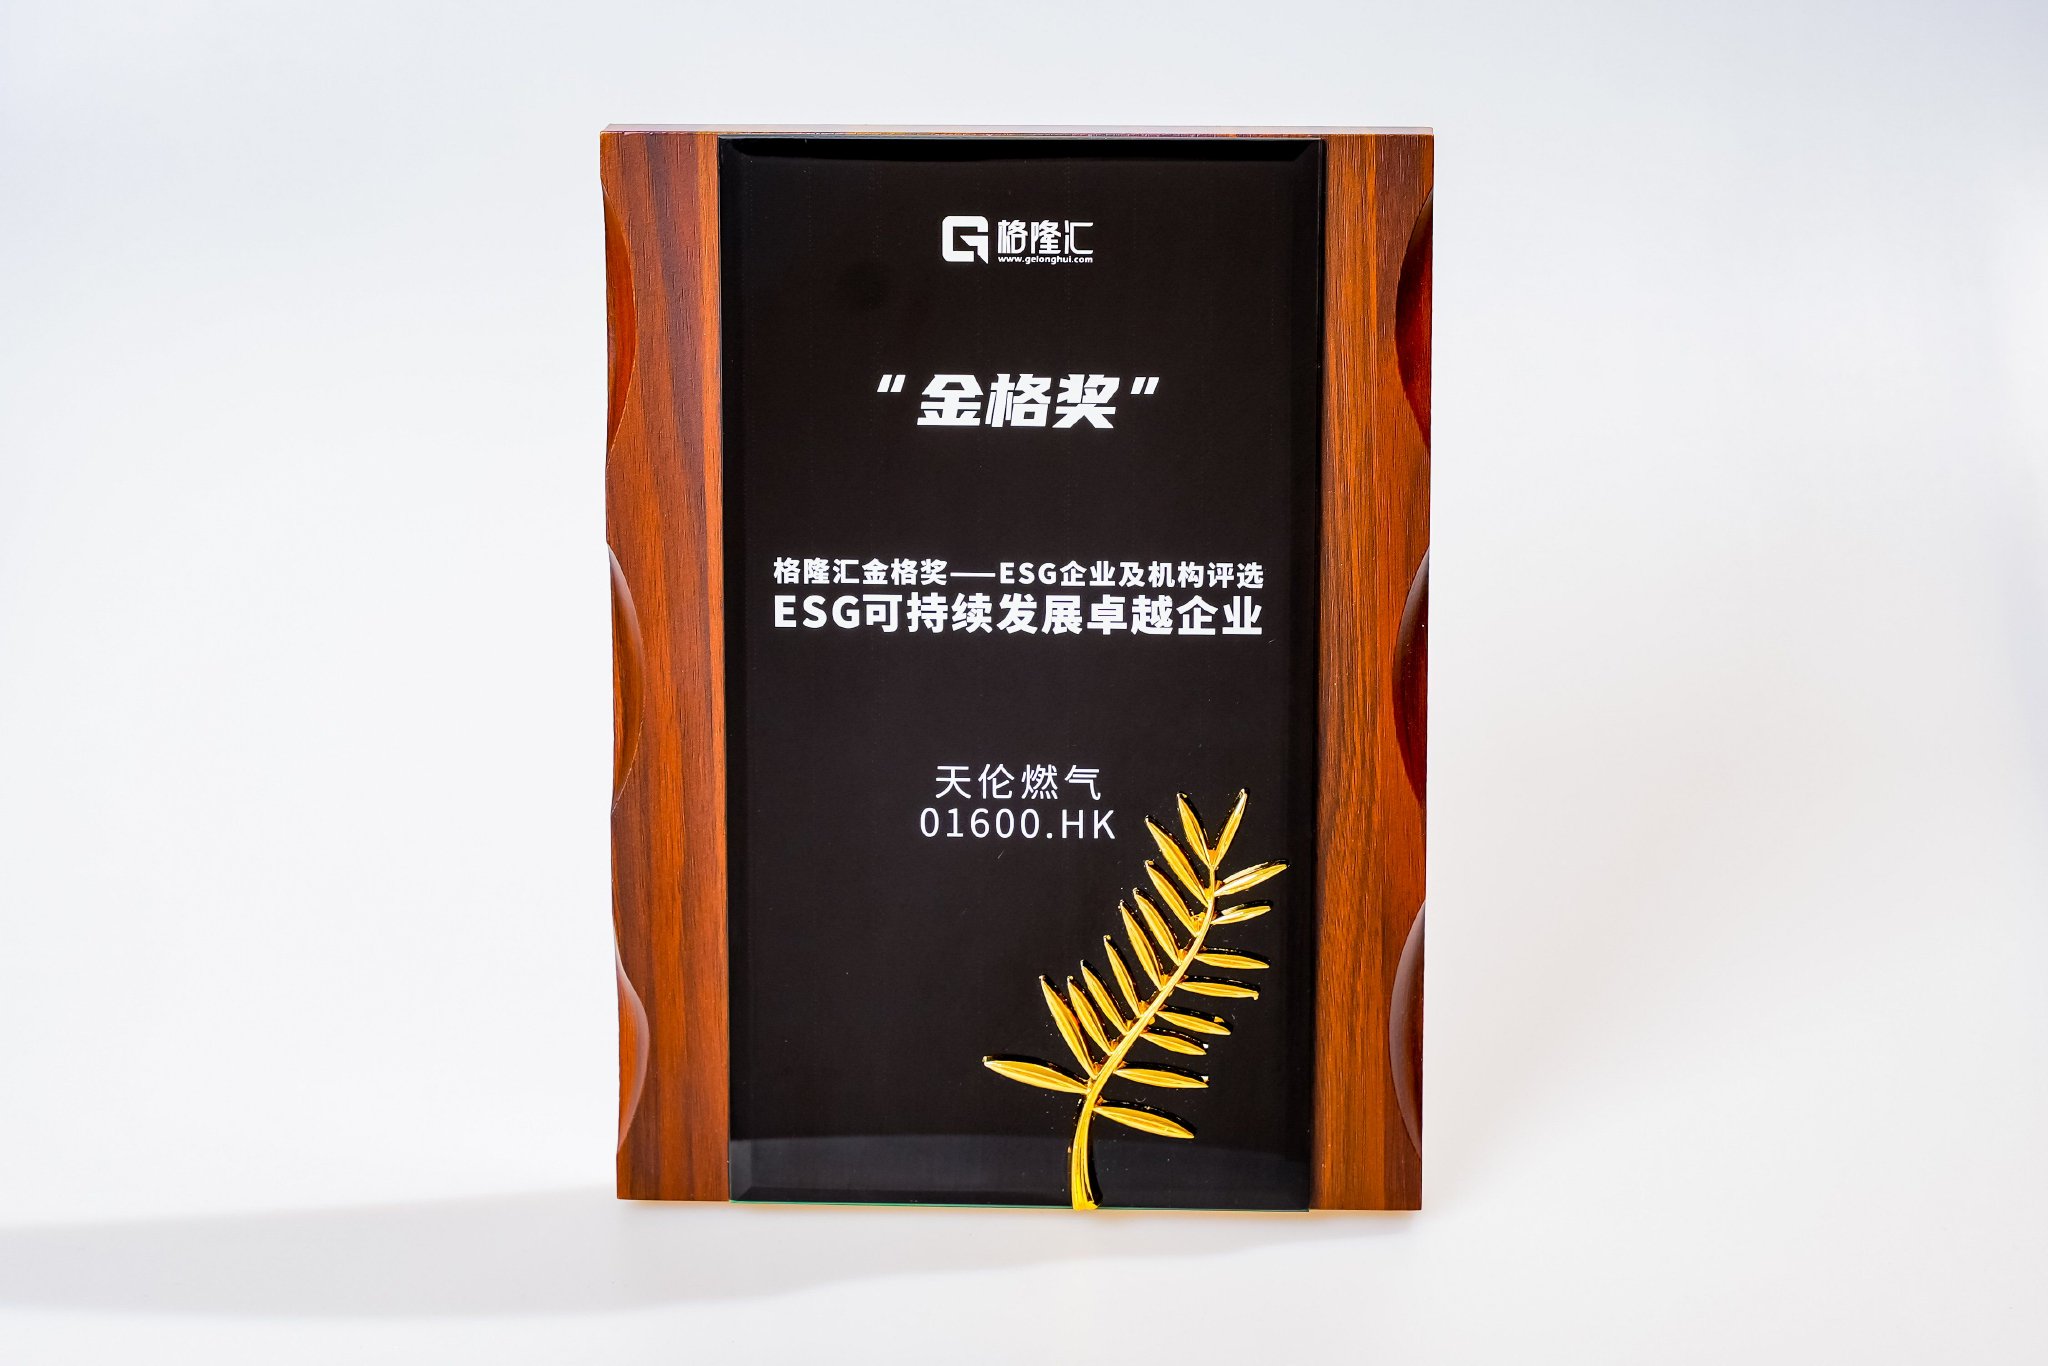 天伦燃气(1600.HK)荣获格隆汇金格奖·ESG可持续发展卓越企业